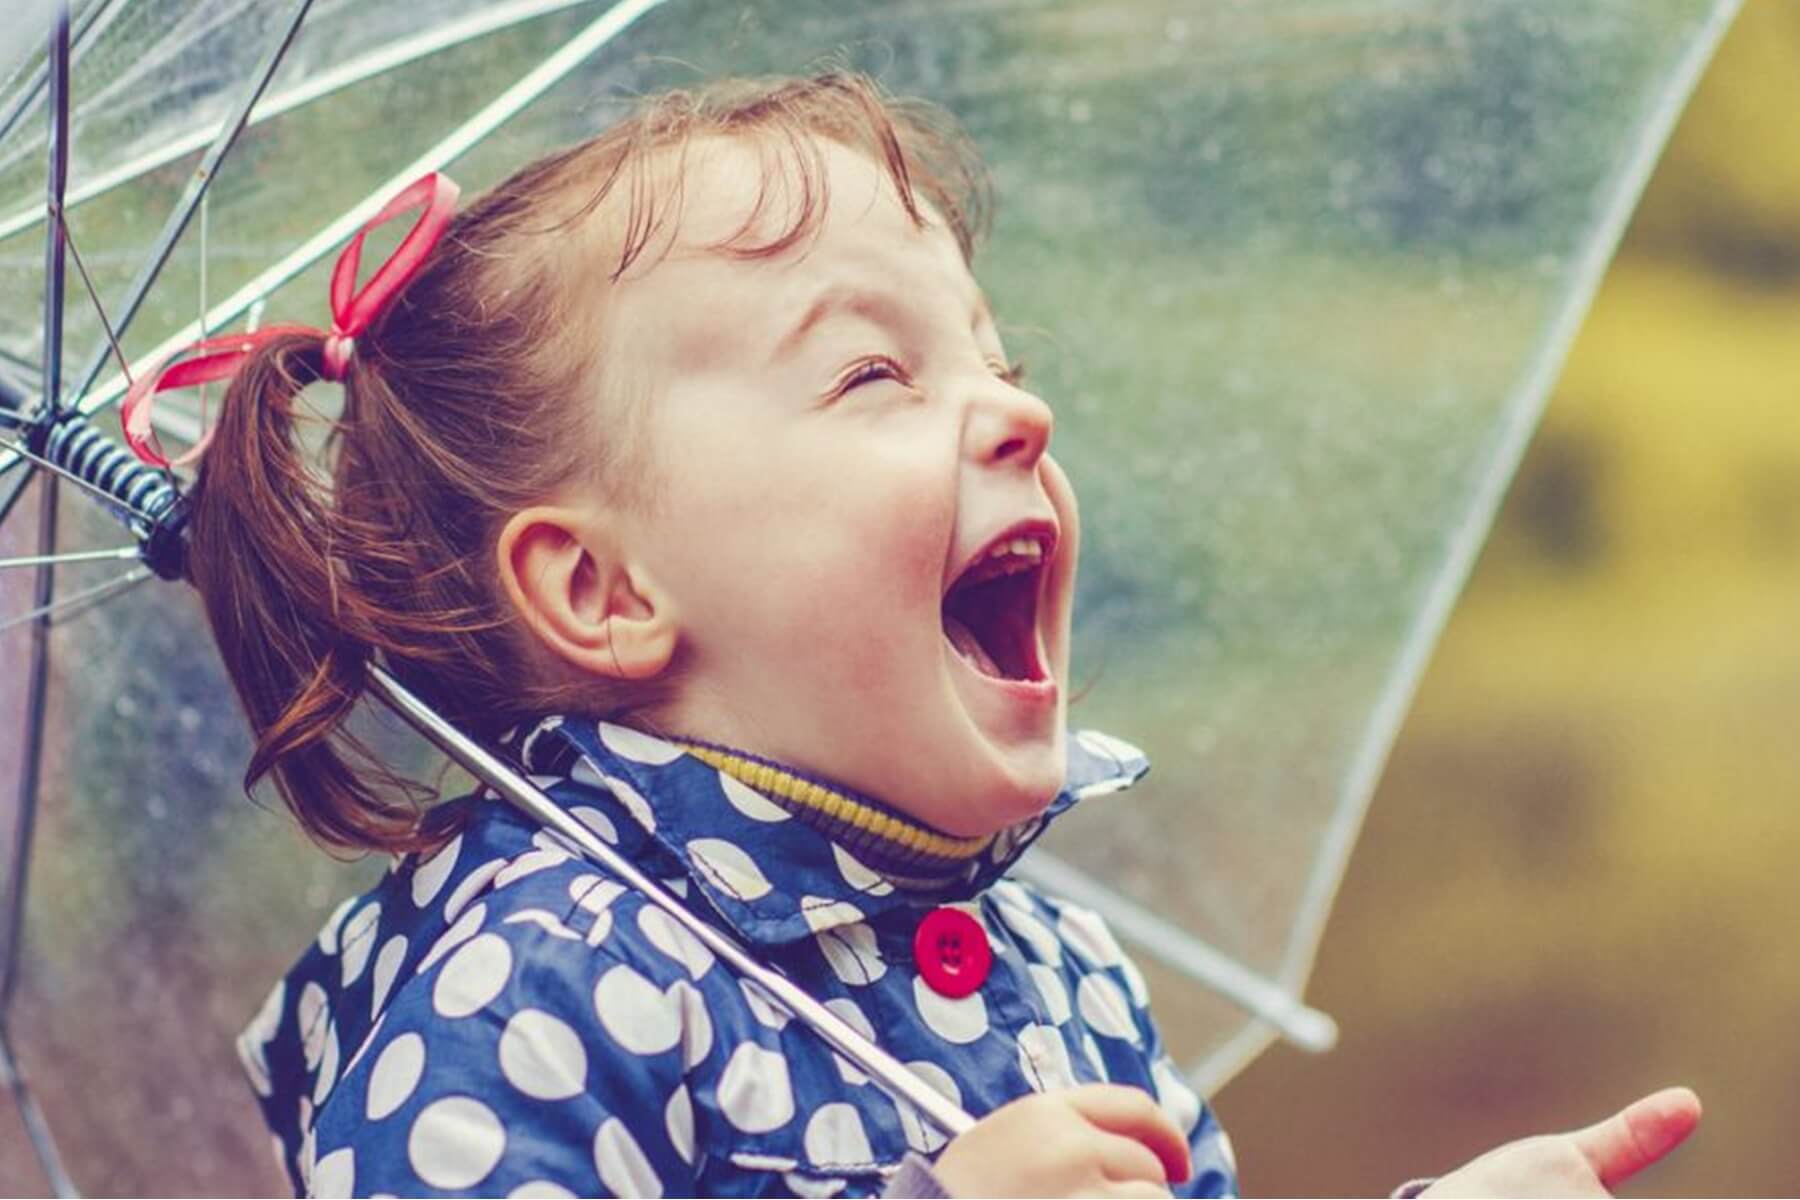 Дети наслаждаются жизнью. Девочка радуется дождю. Дети радуются. Дождь радость. Радость под дождем.